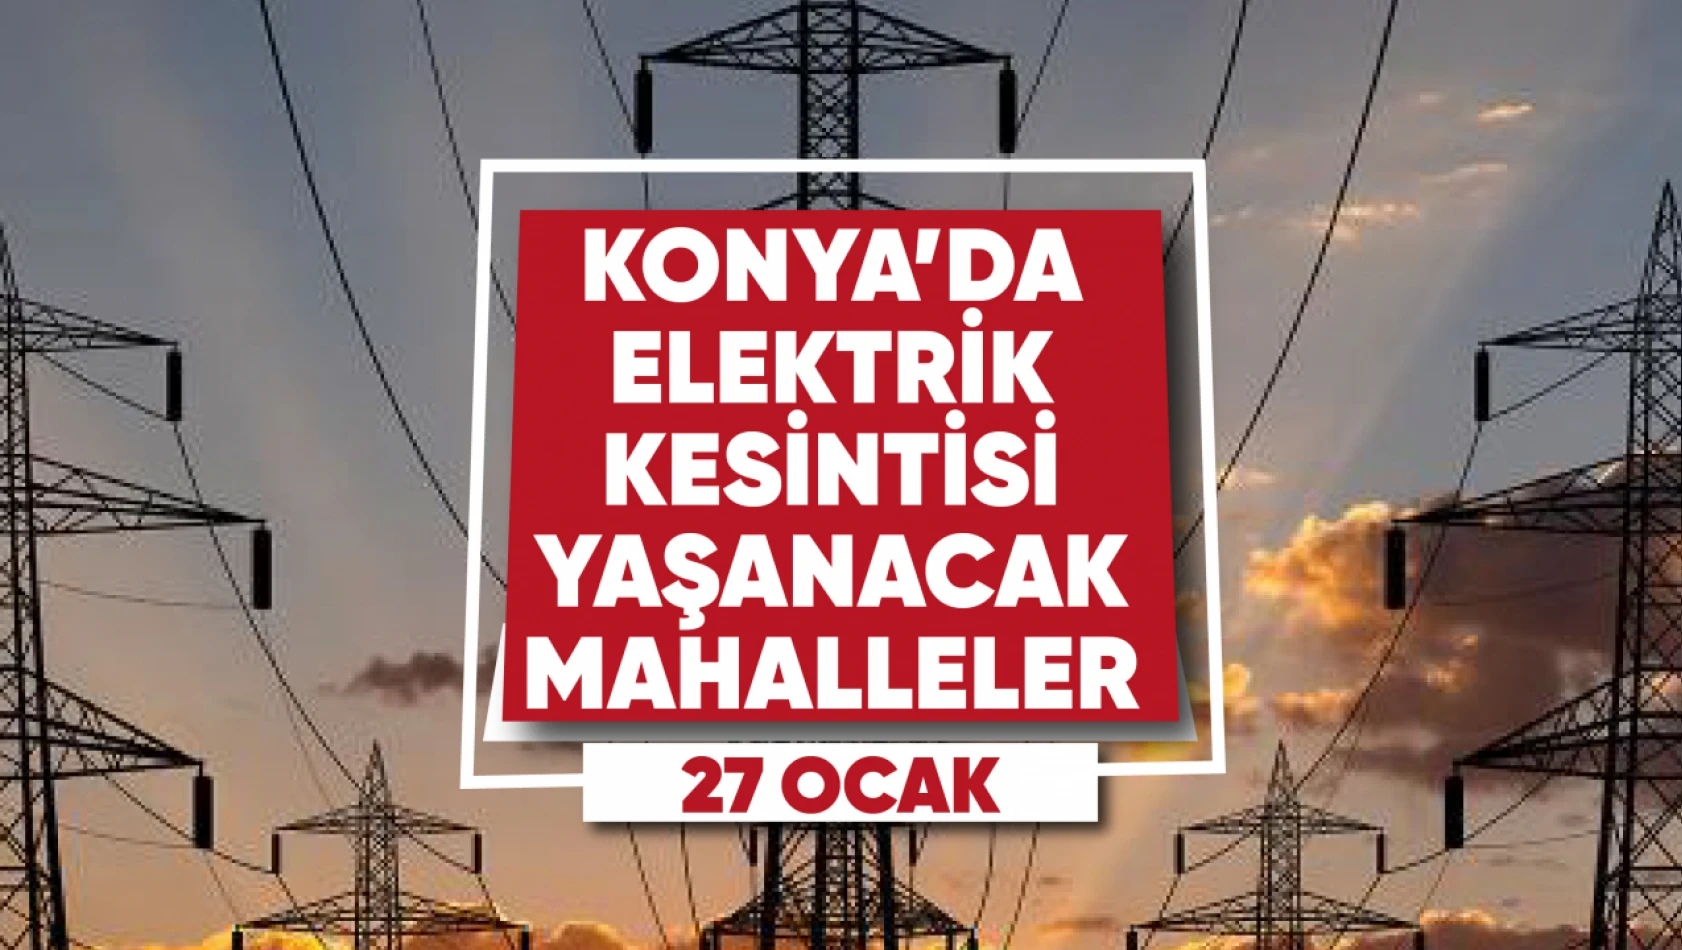 Konya'da elektrik kesintisi yaşanacak mahalle ve sokaklar (27 Ocak 2023)